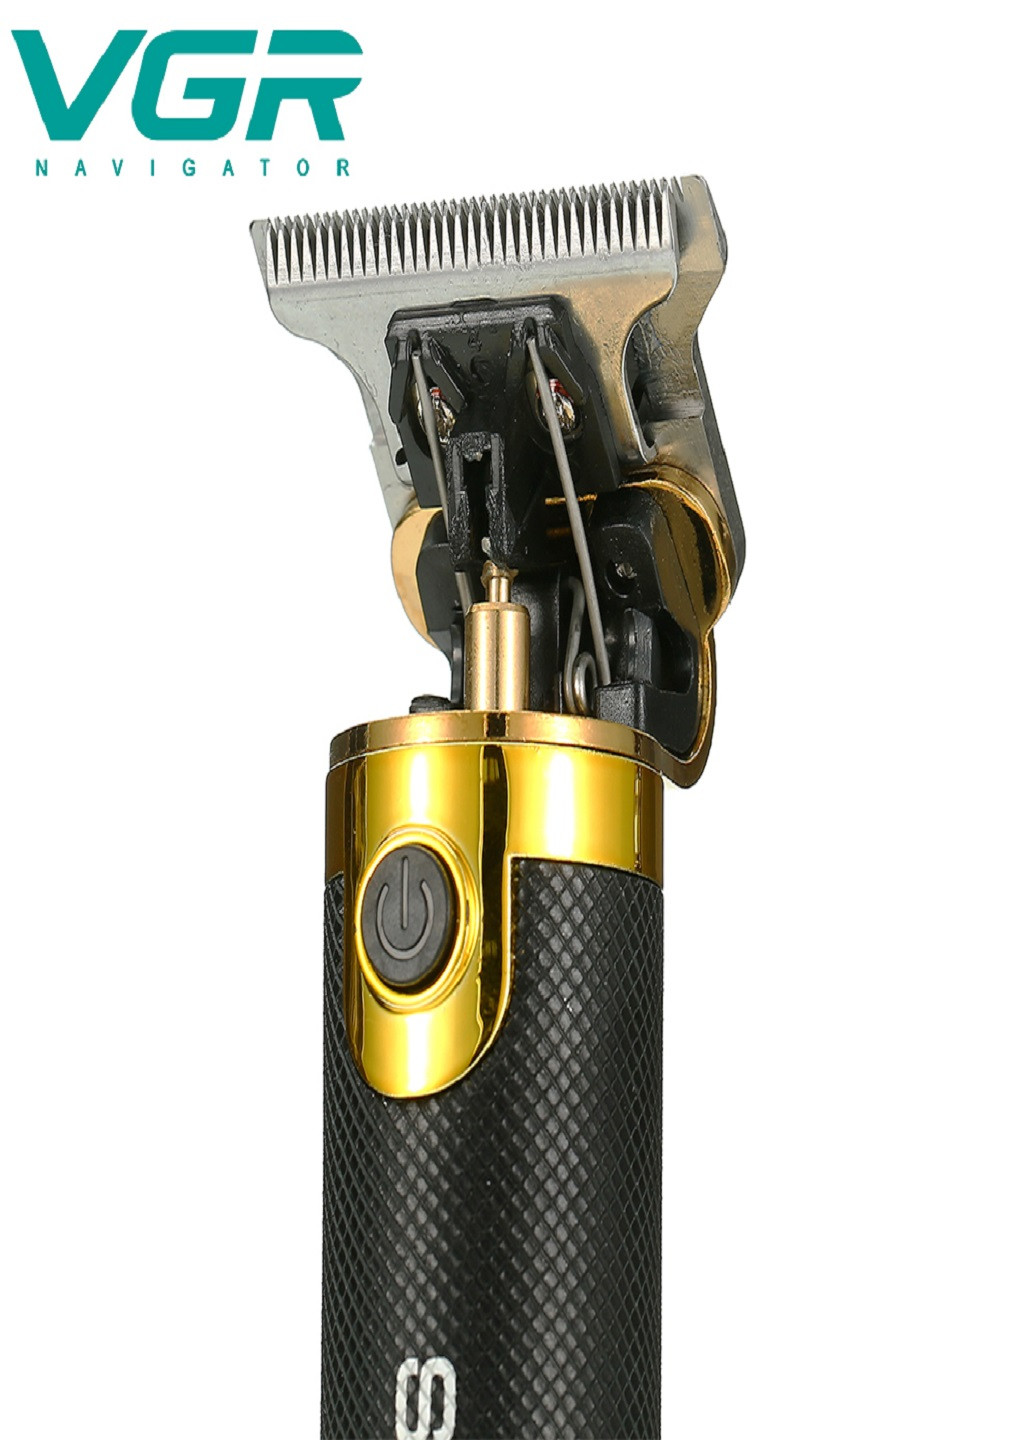 Акумуляторна машинка для стрижки волосс VGR 082 VTech (253131631)